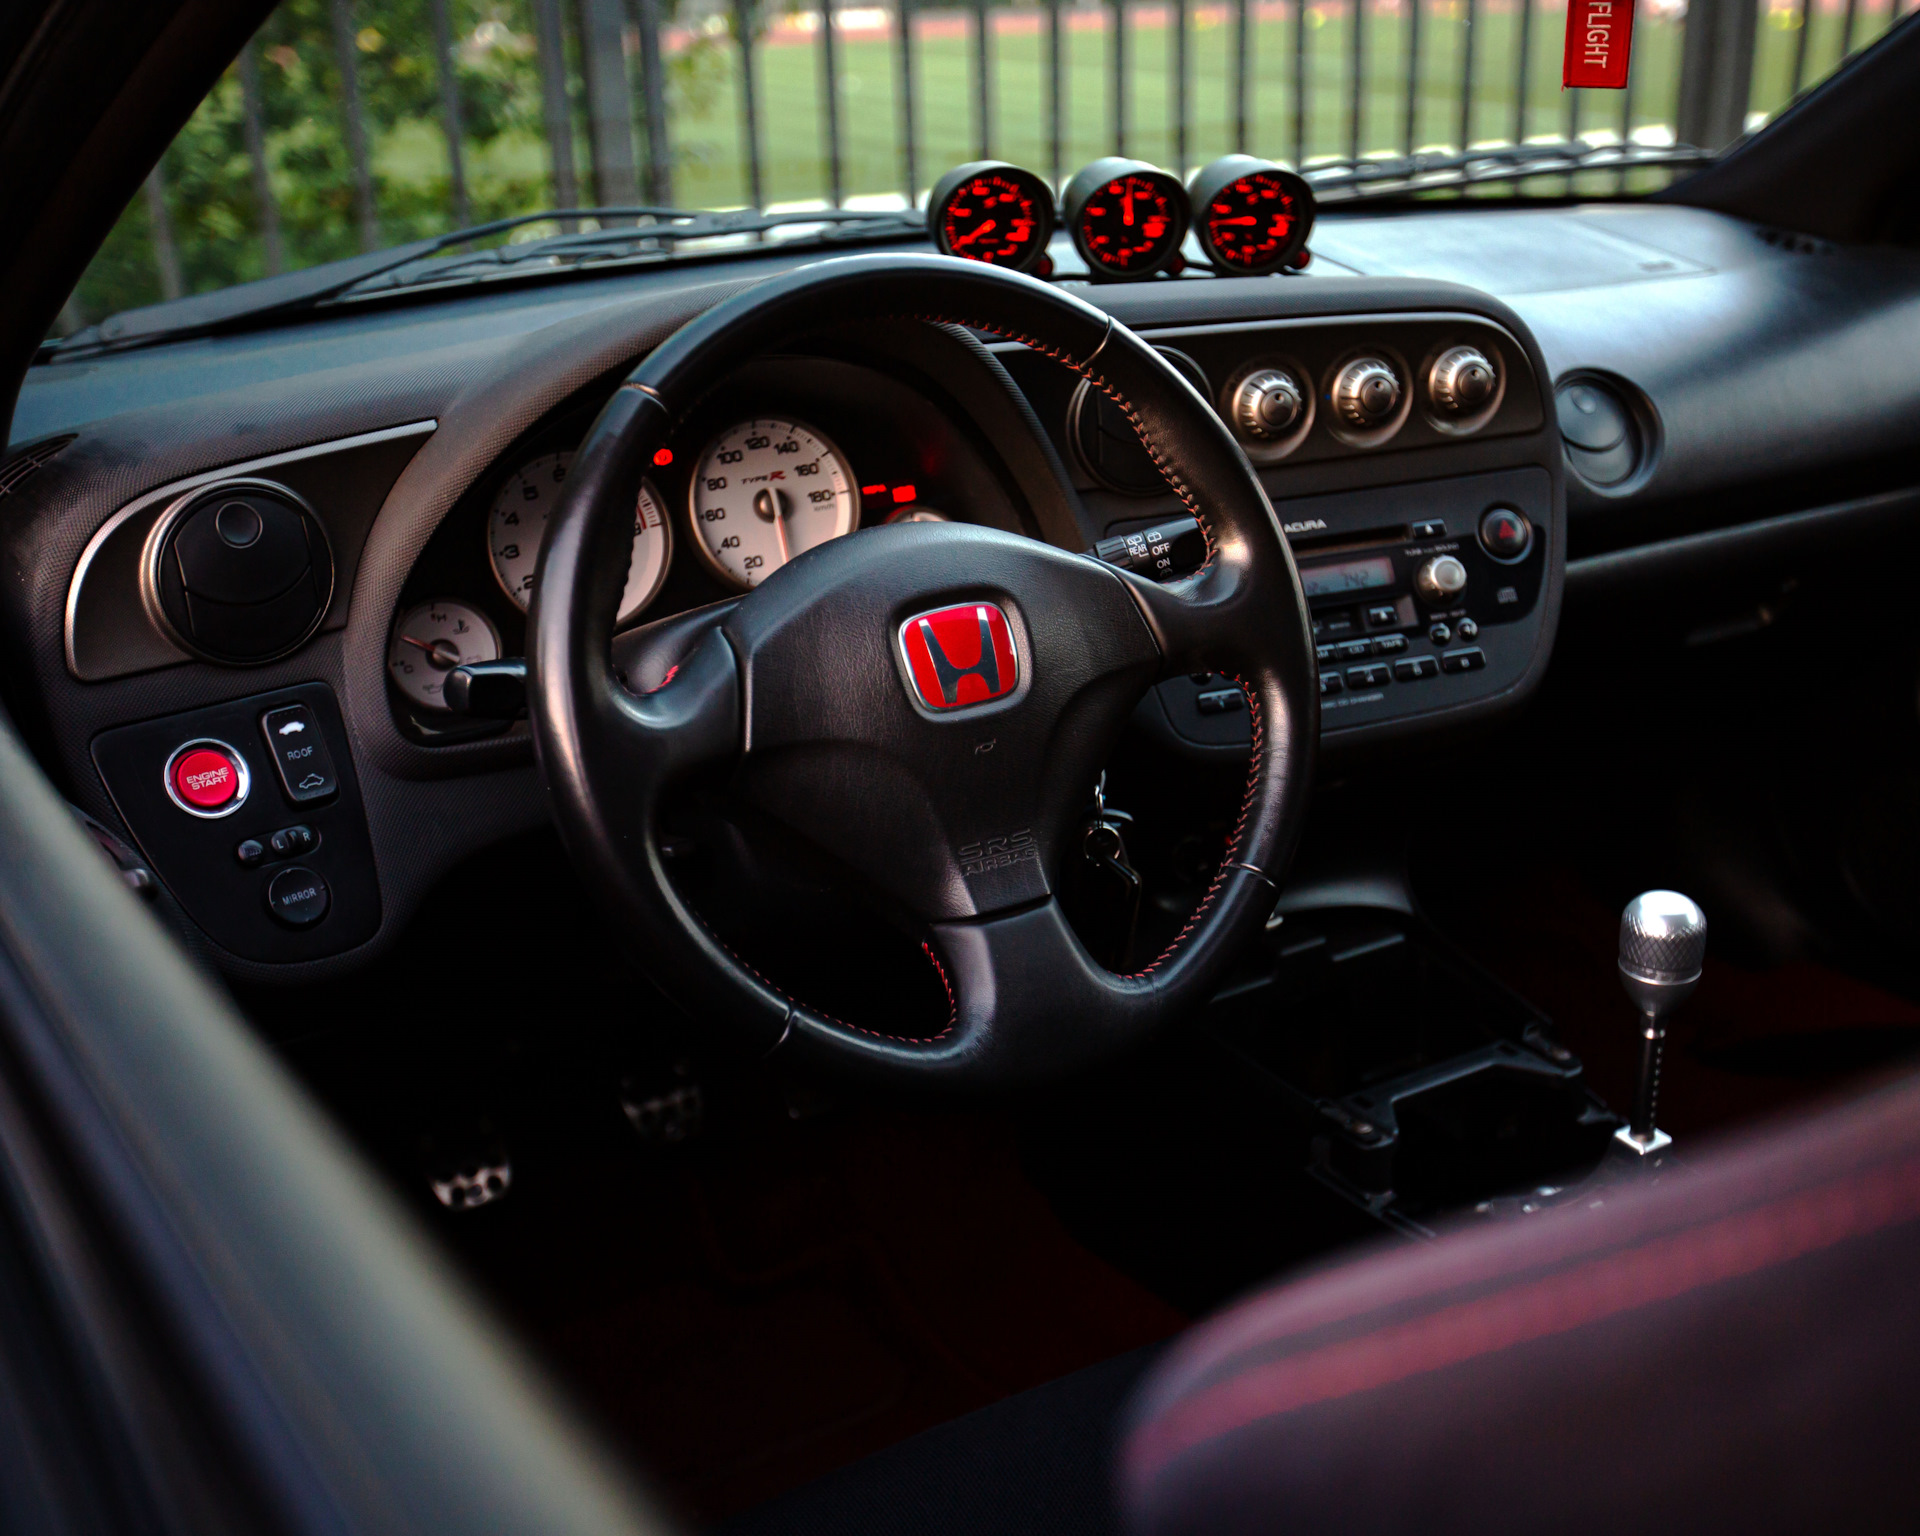 Acura rsx interior mods